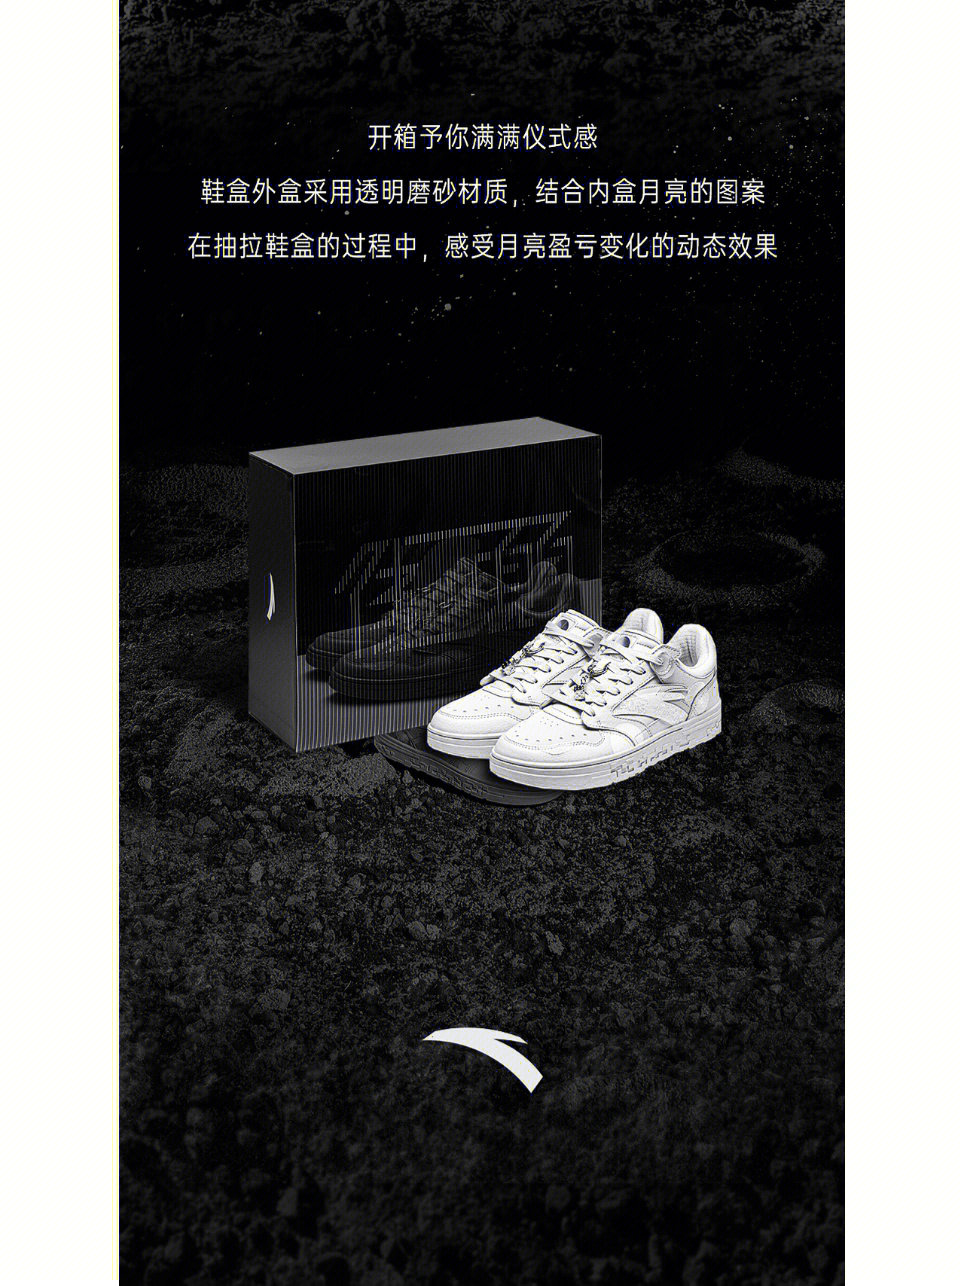 安踏鞋盒上的二维码图片